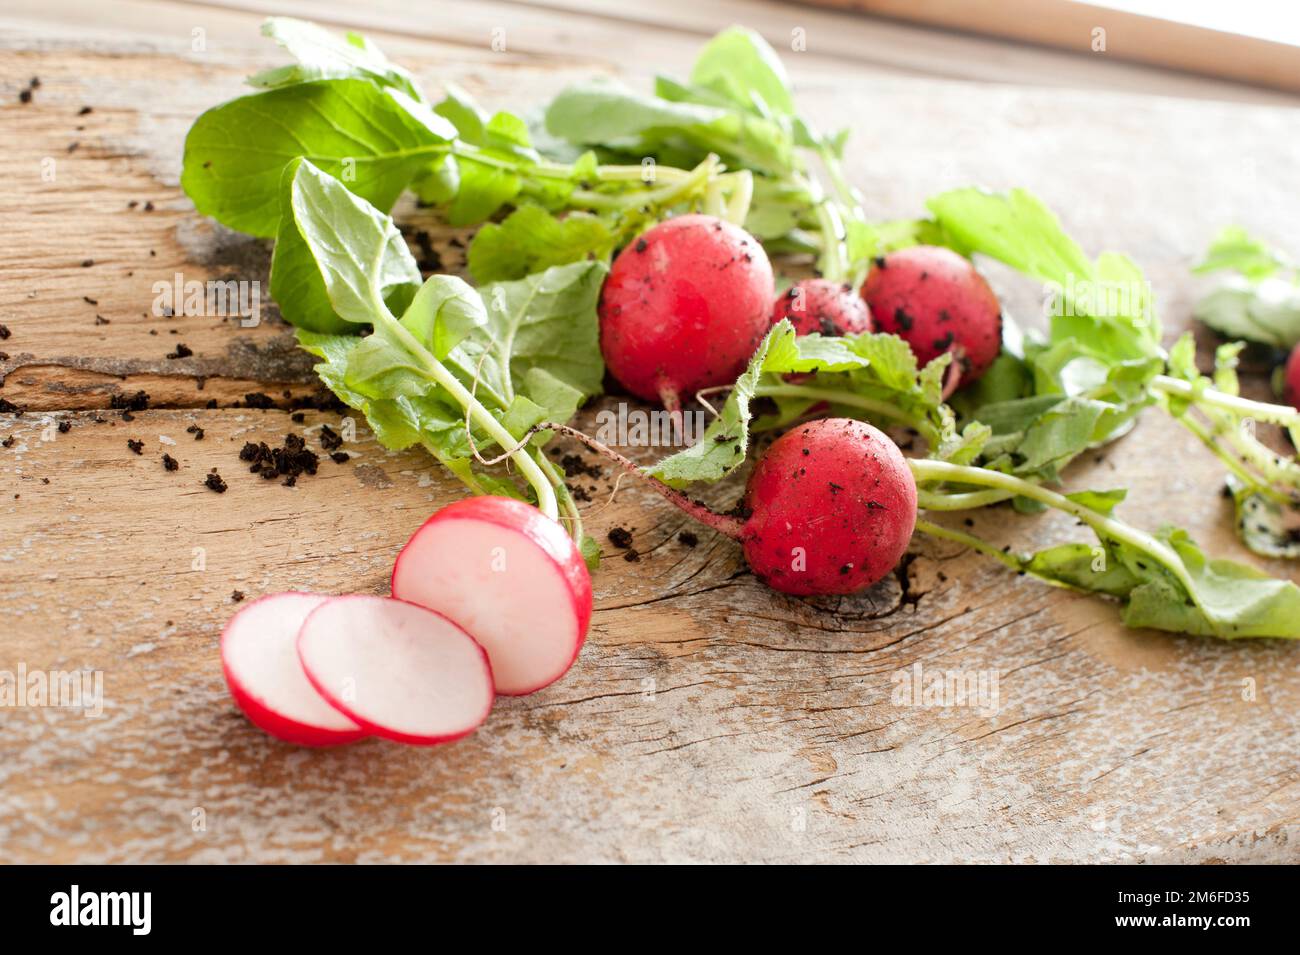 Affettare le ravanelli per gli ingredienti dell'insalata Foto Stock